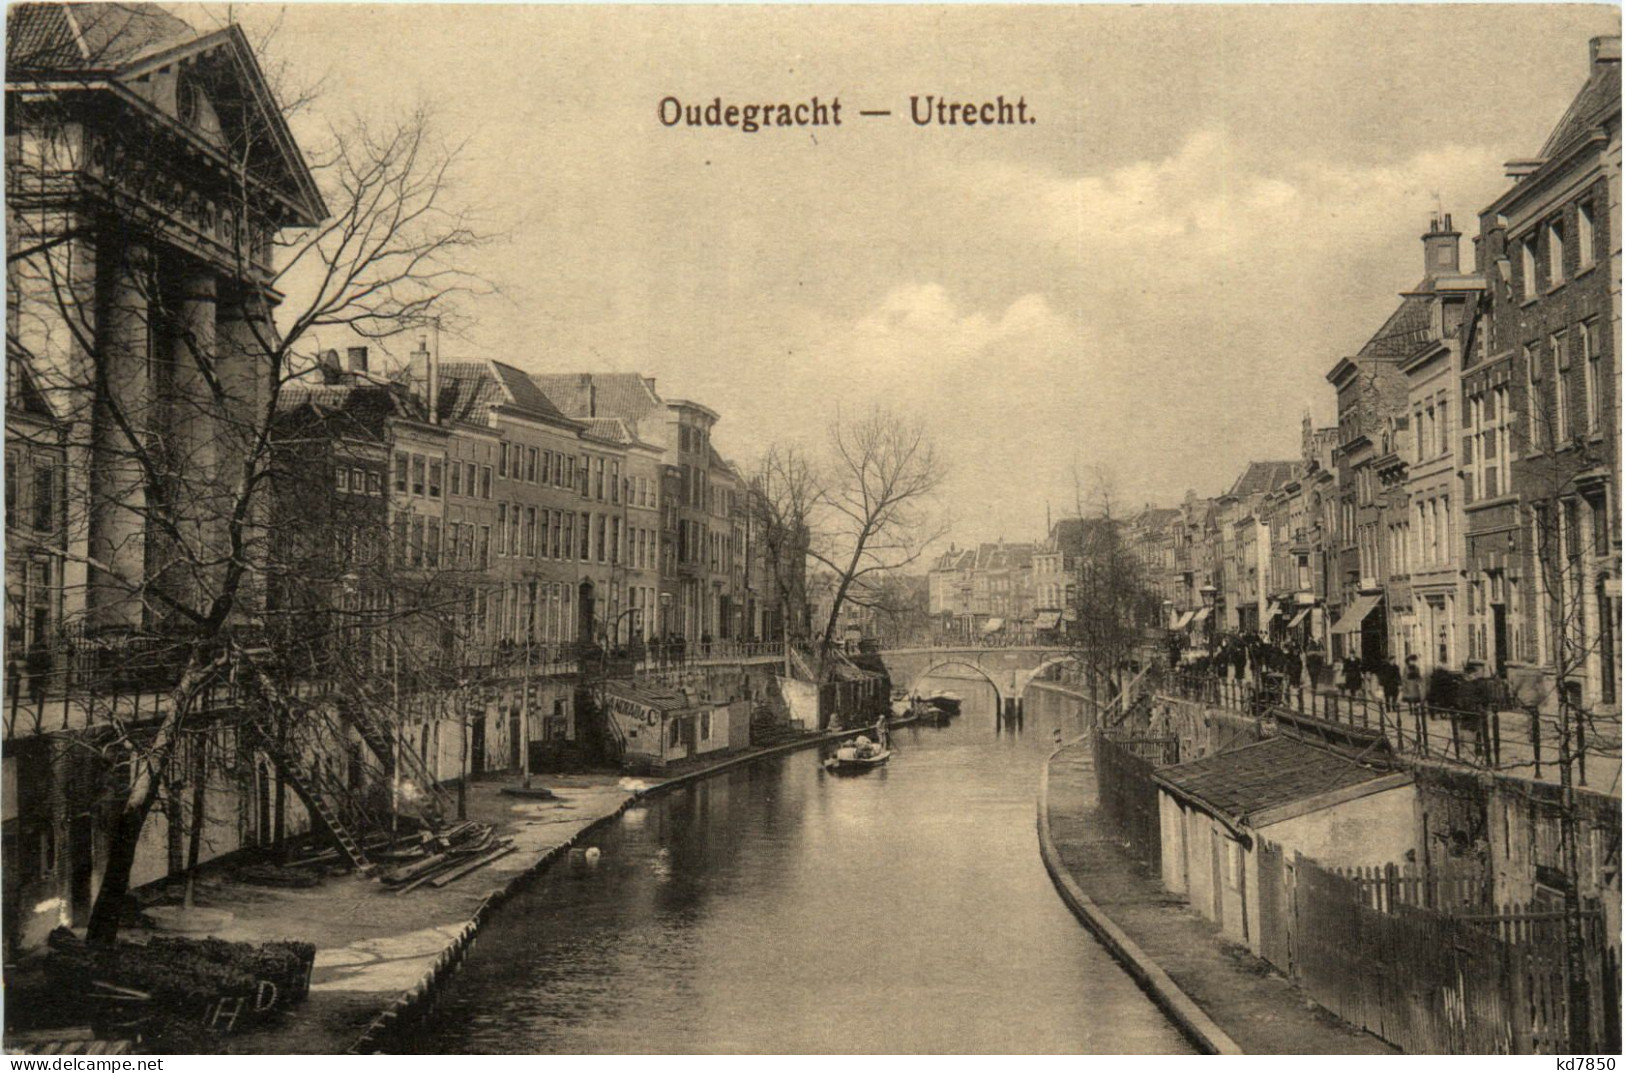 Utrecht - Oudegracht - Utrecht